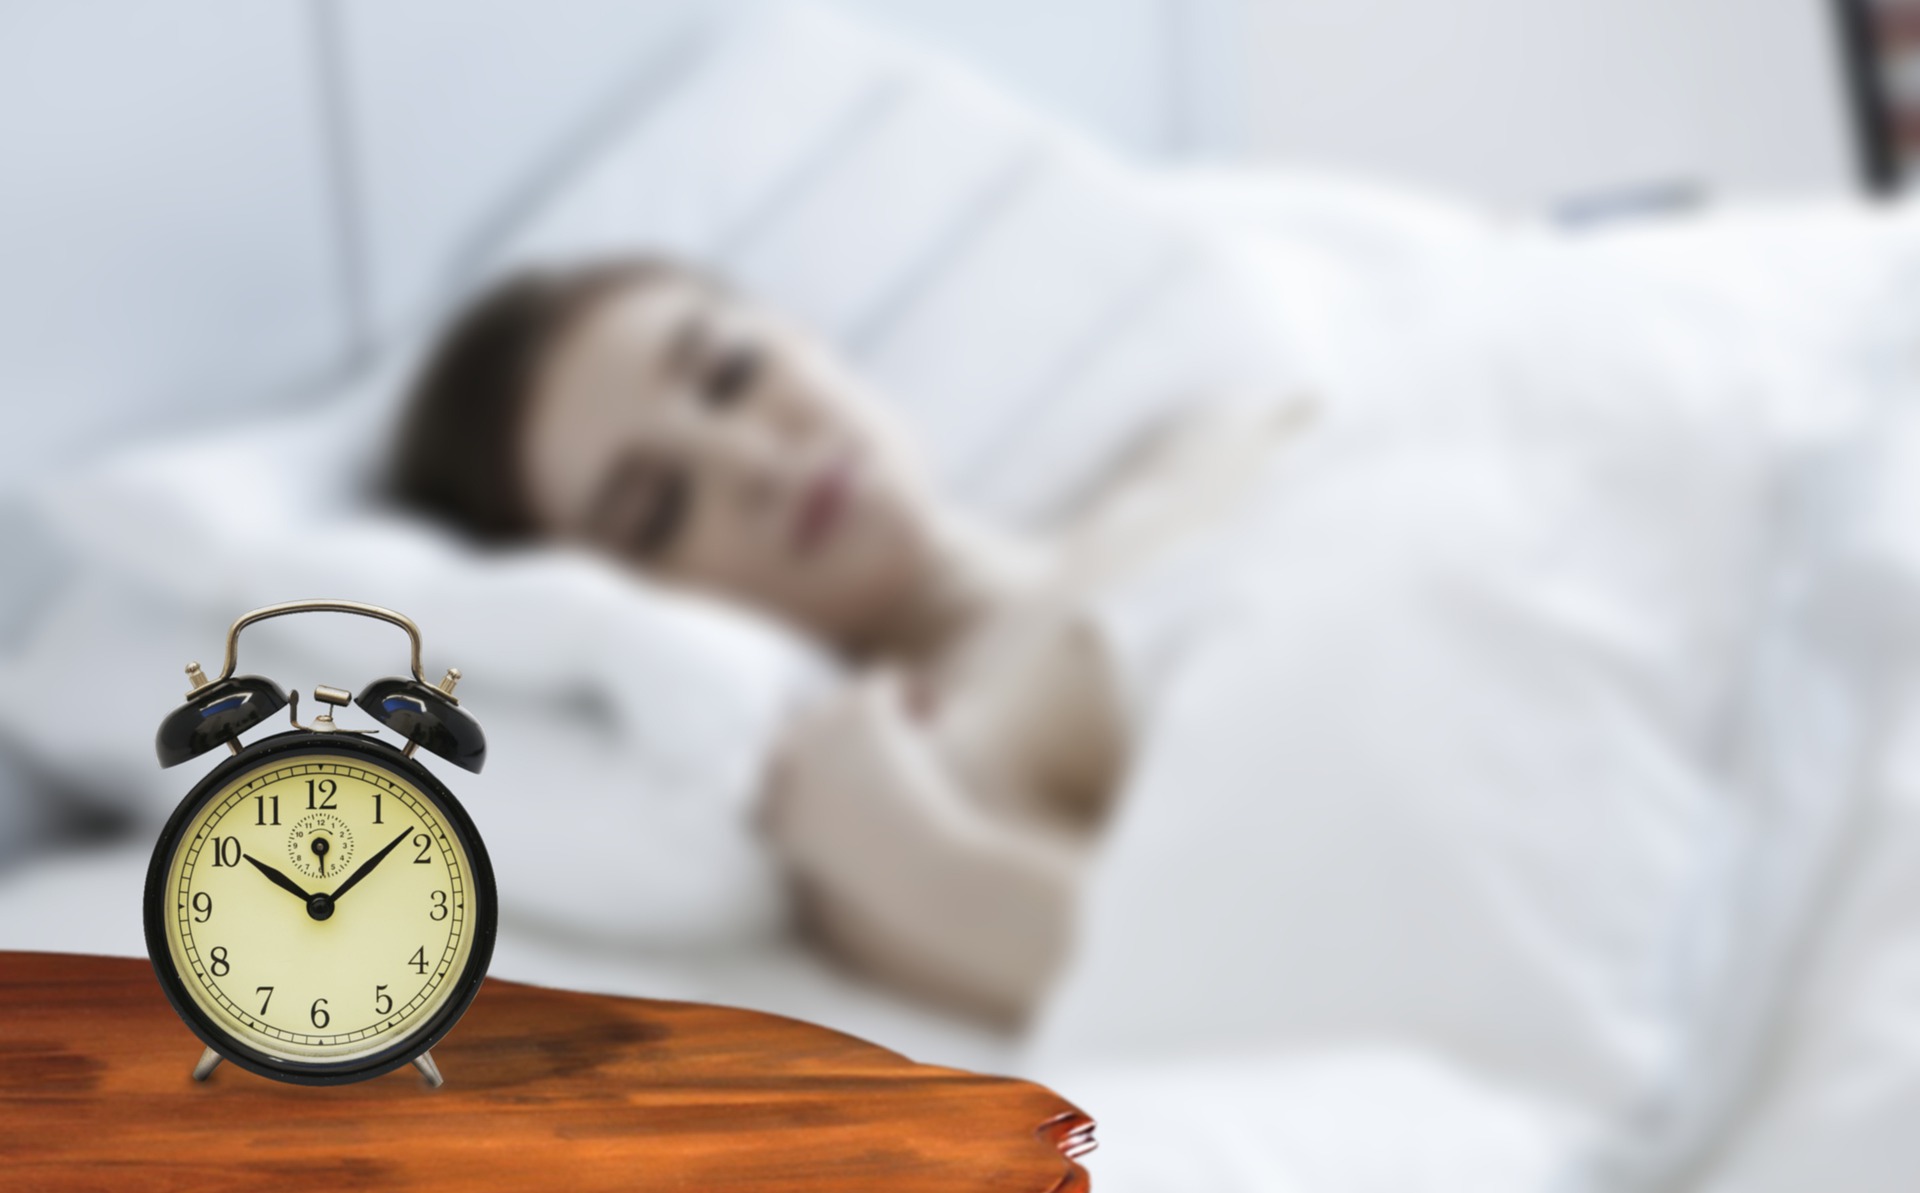 Somnul odihnitor reduce riscul de accident vascular cerebral